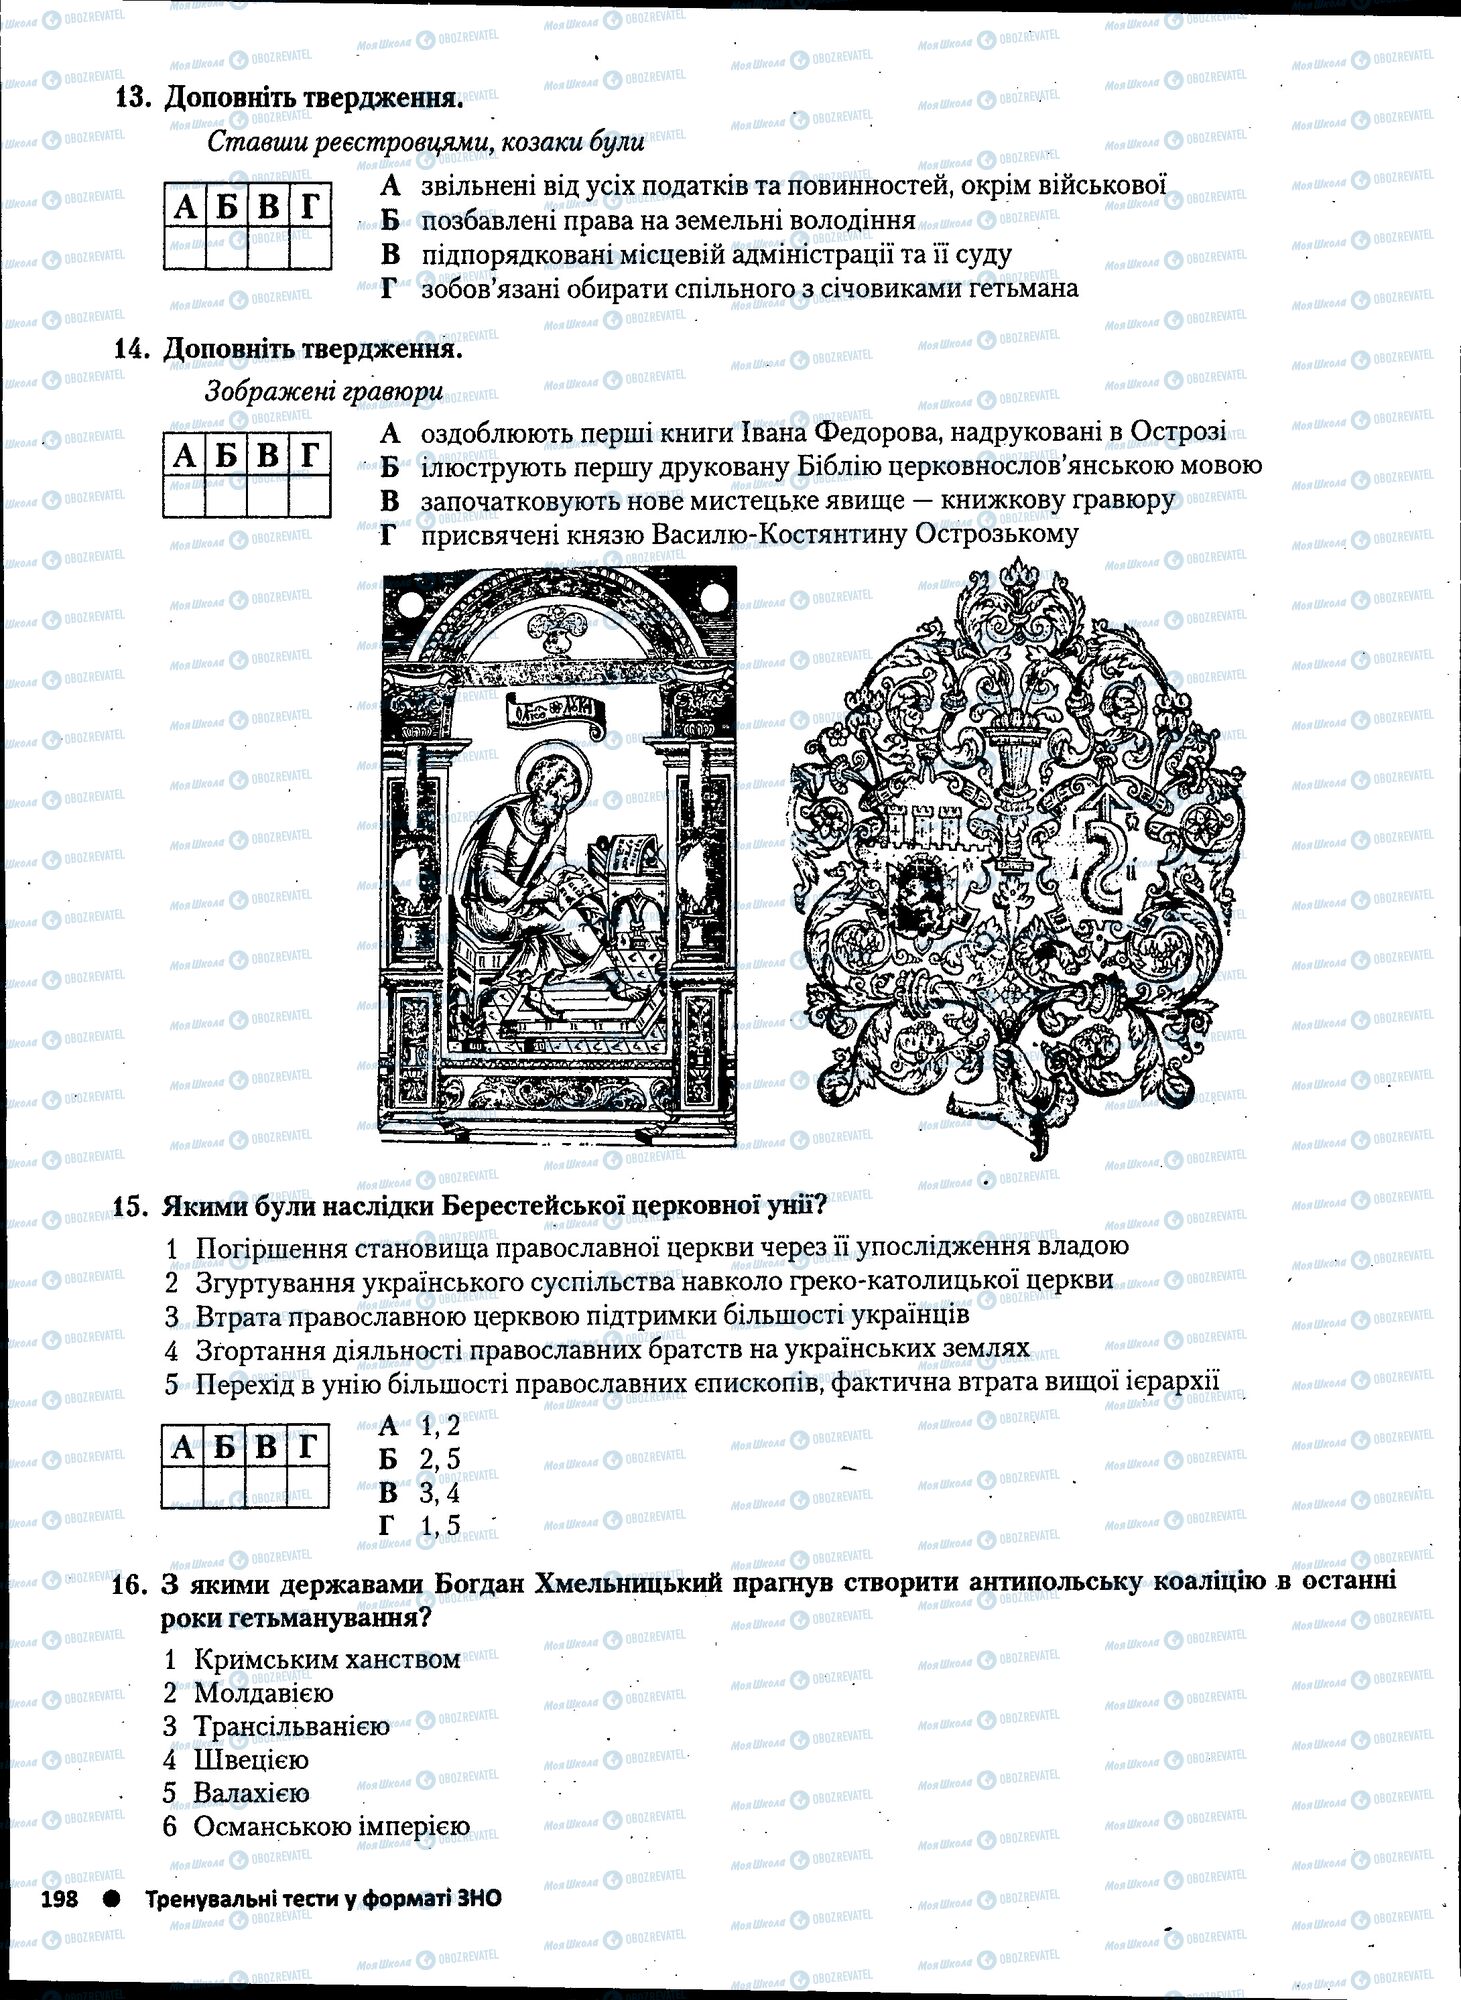 ЗНО История Украины 11 класс страница 198